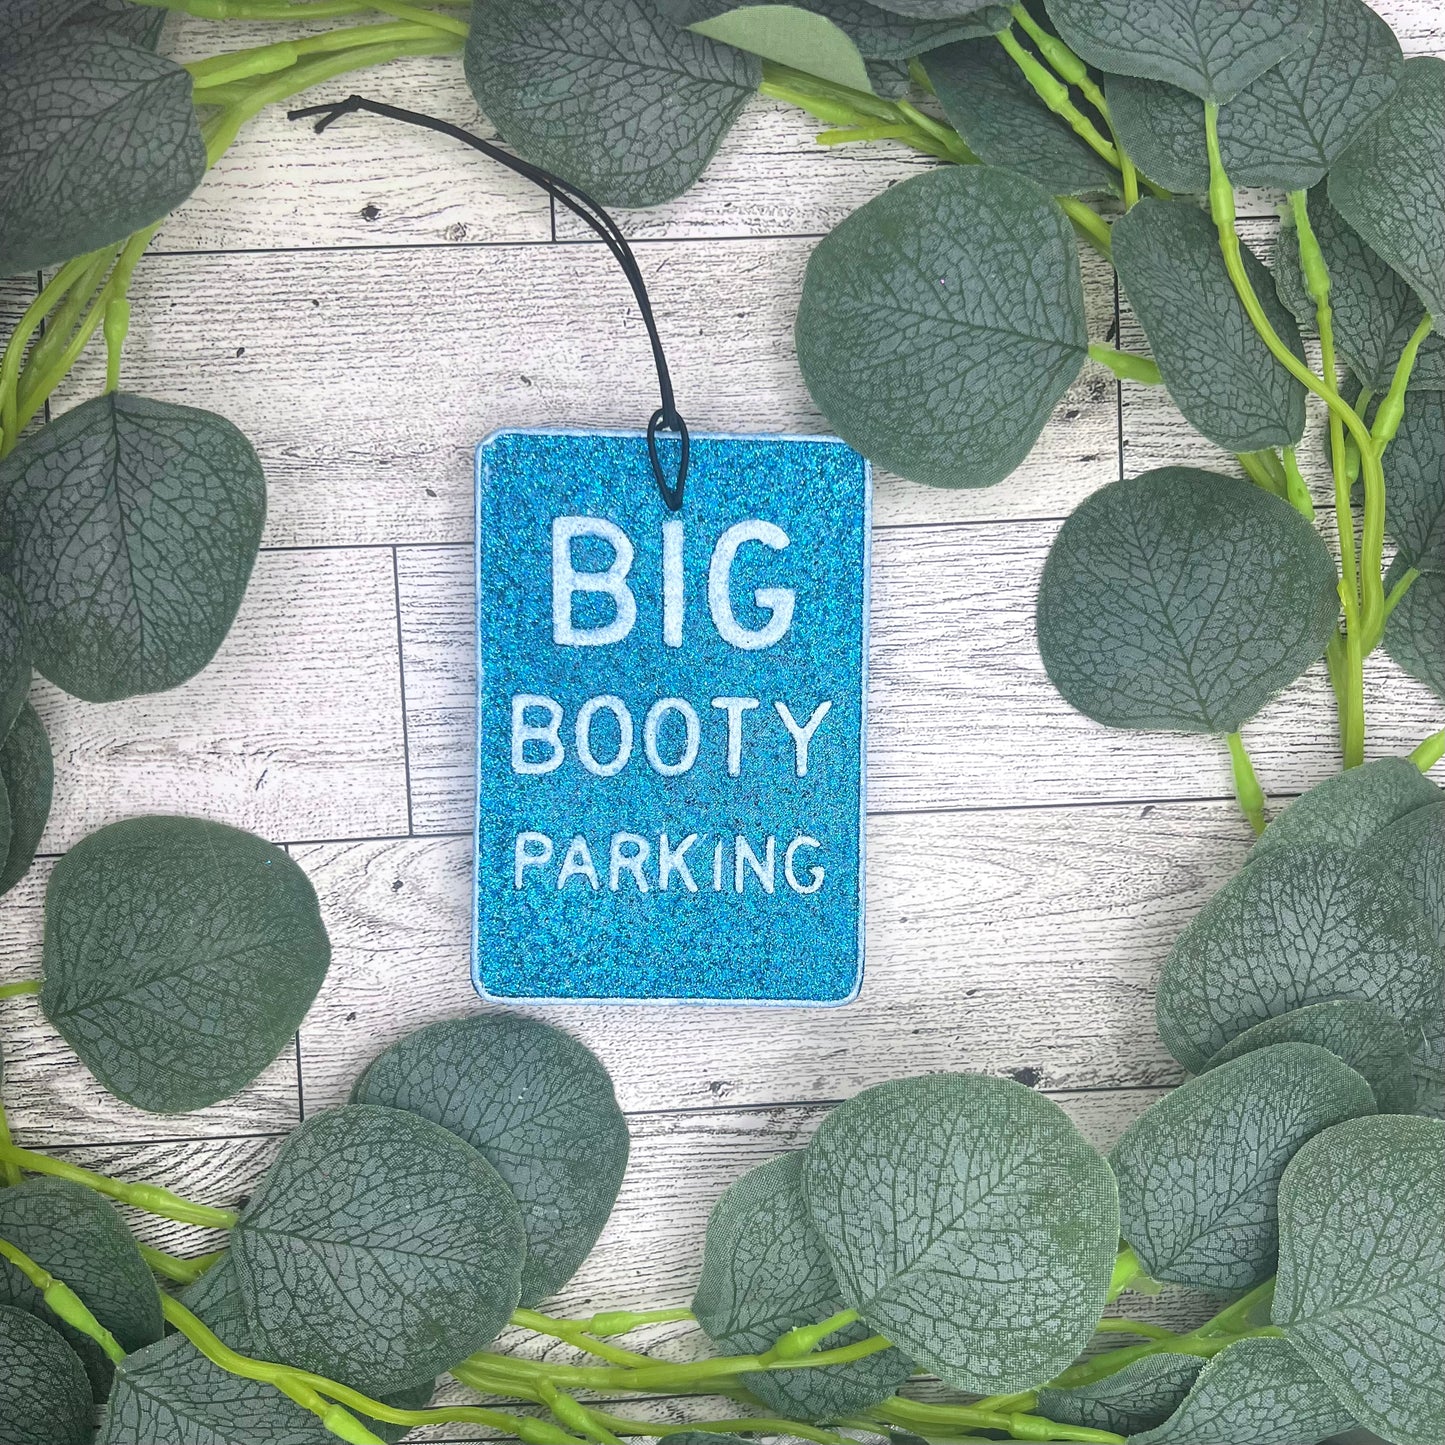 Car Freshie: Big Booty Parking